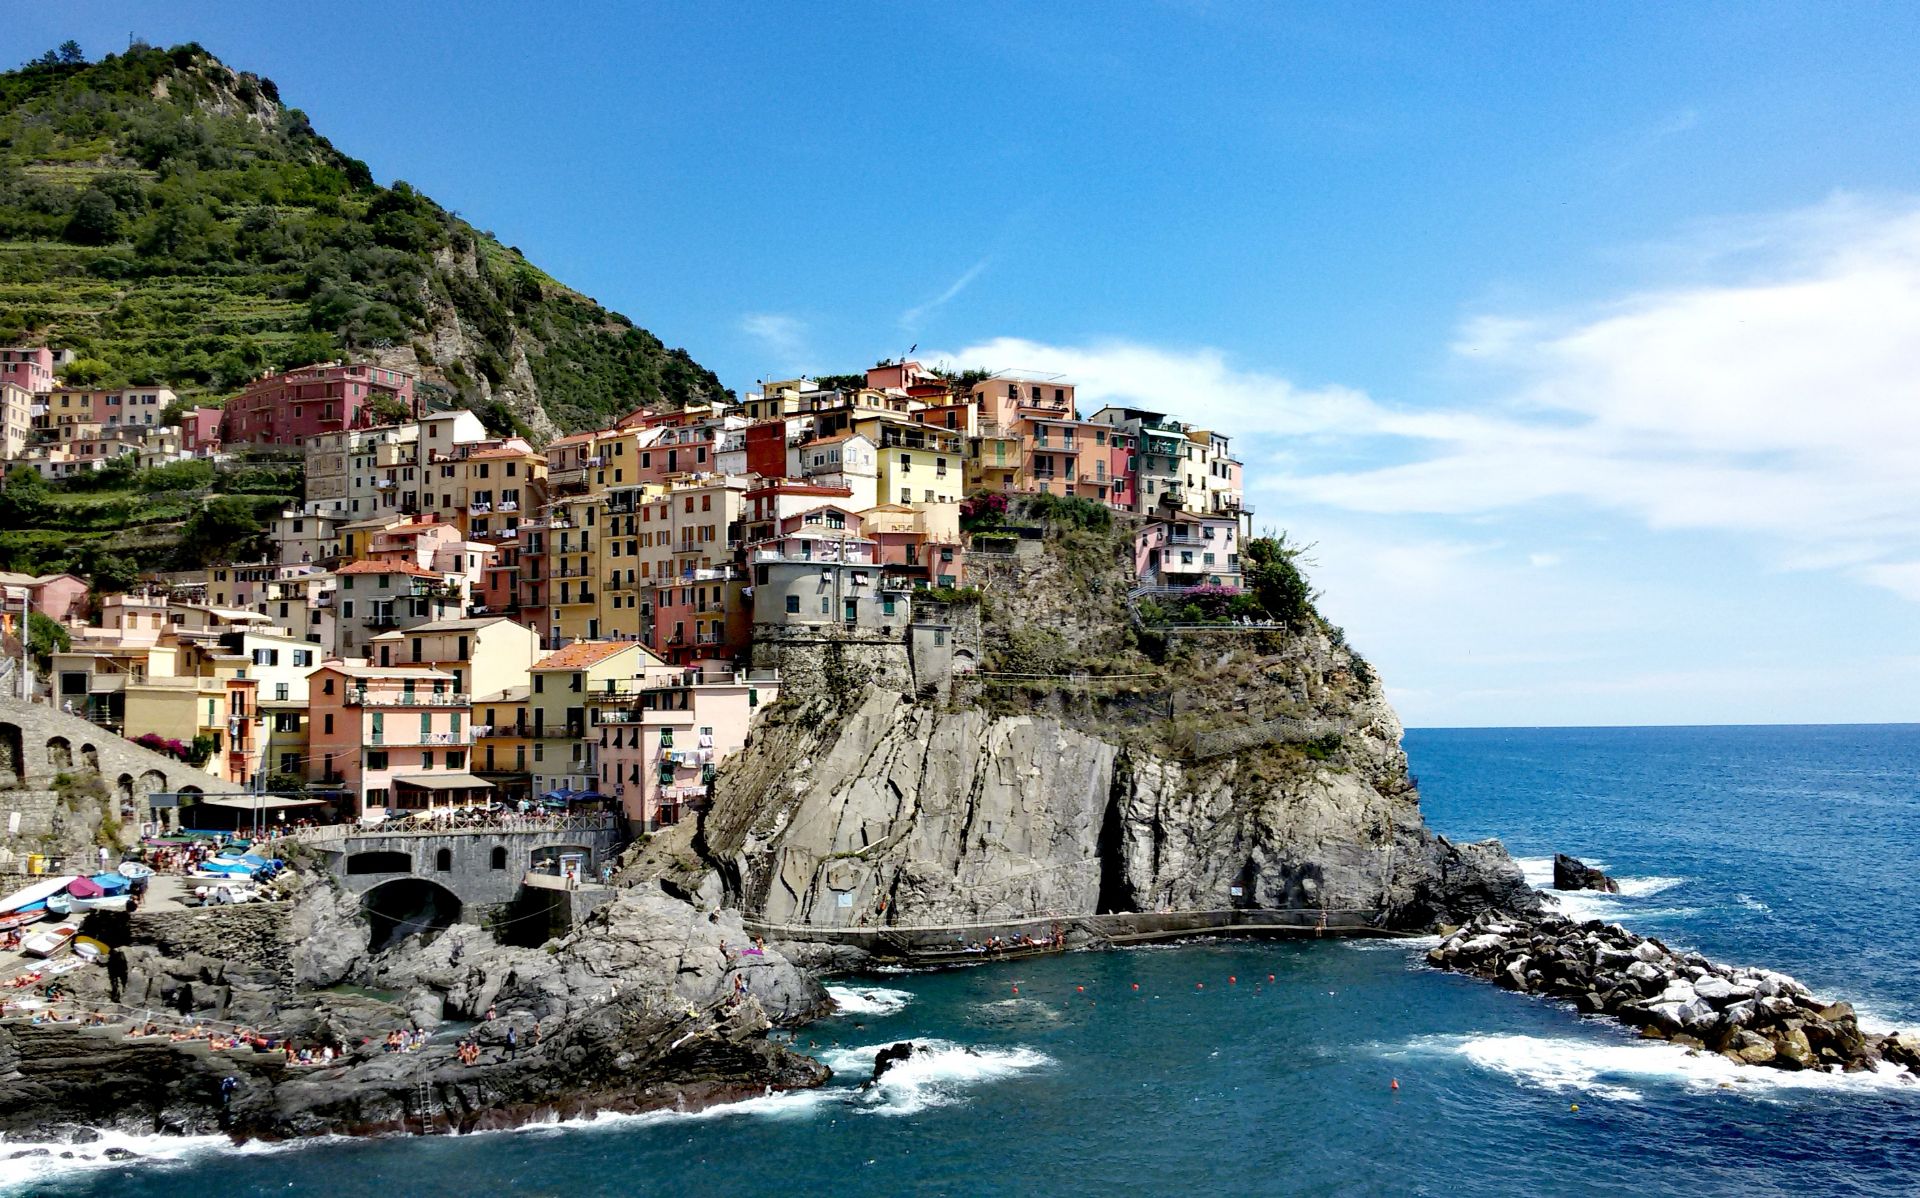 意大利 ~ 美麗漁村之旅 | EUROPERAIL